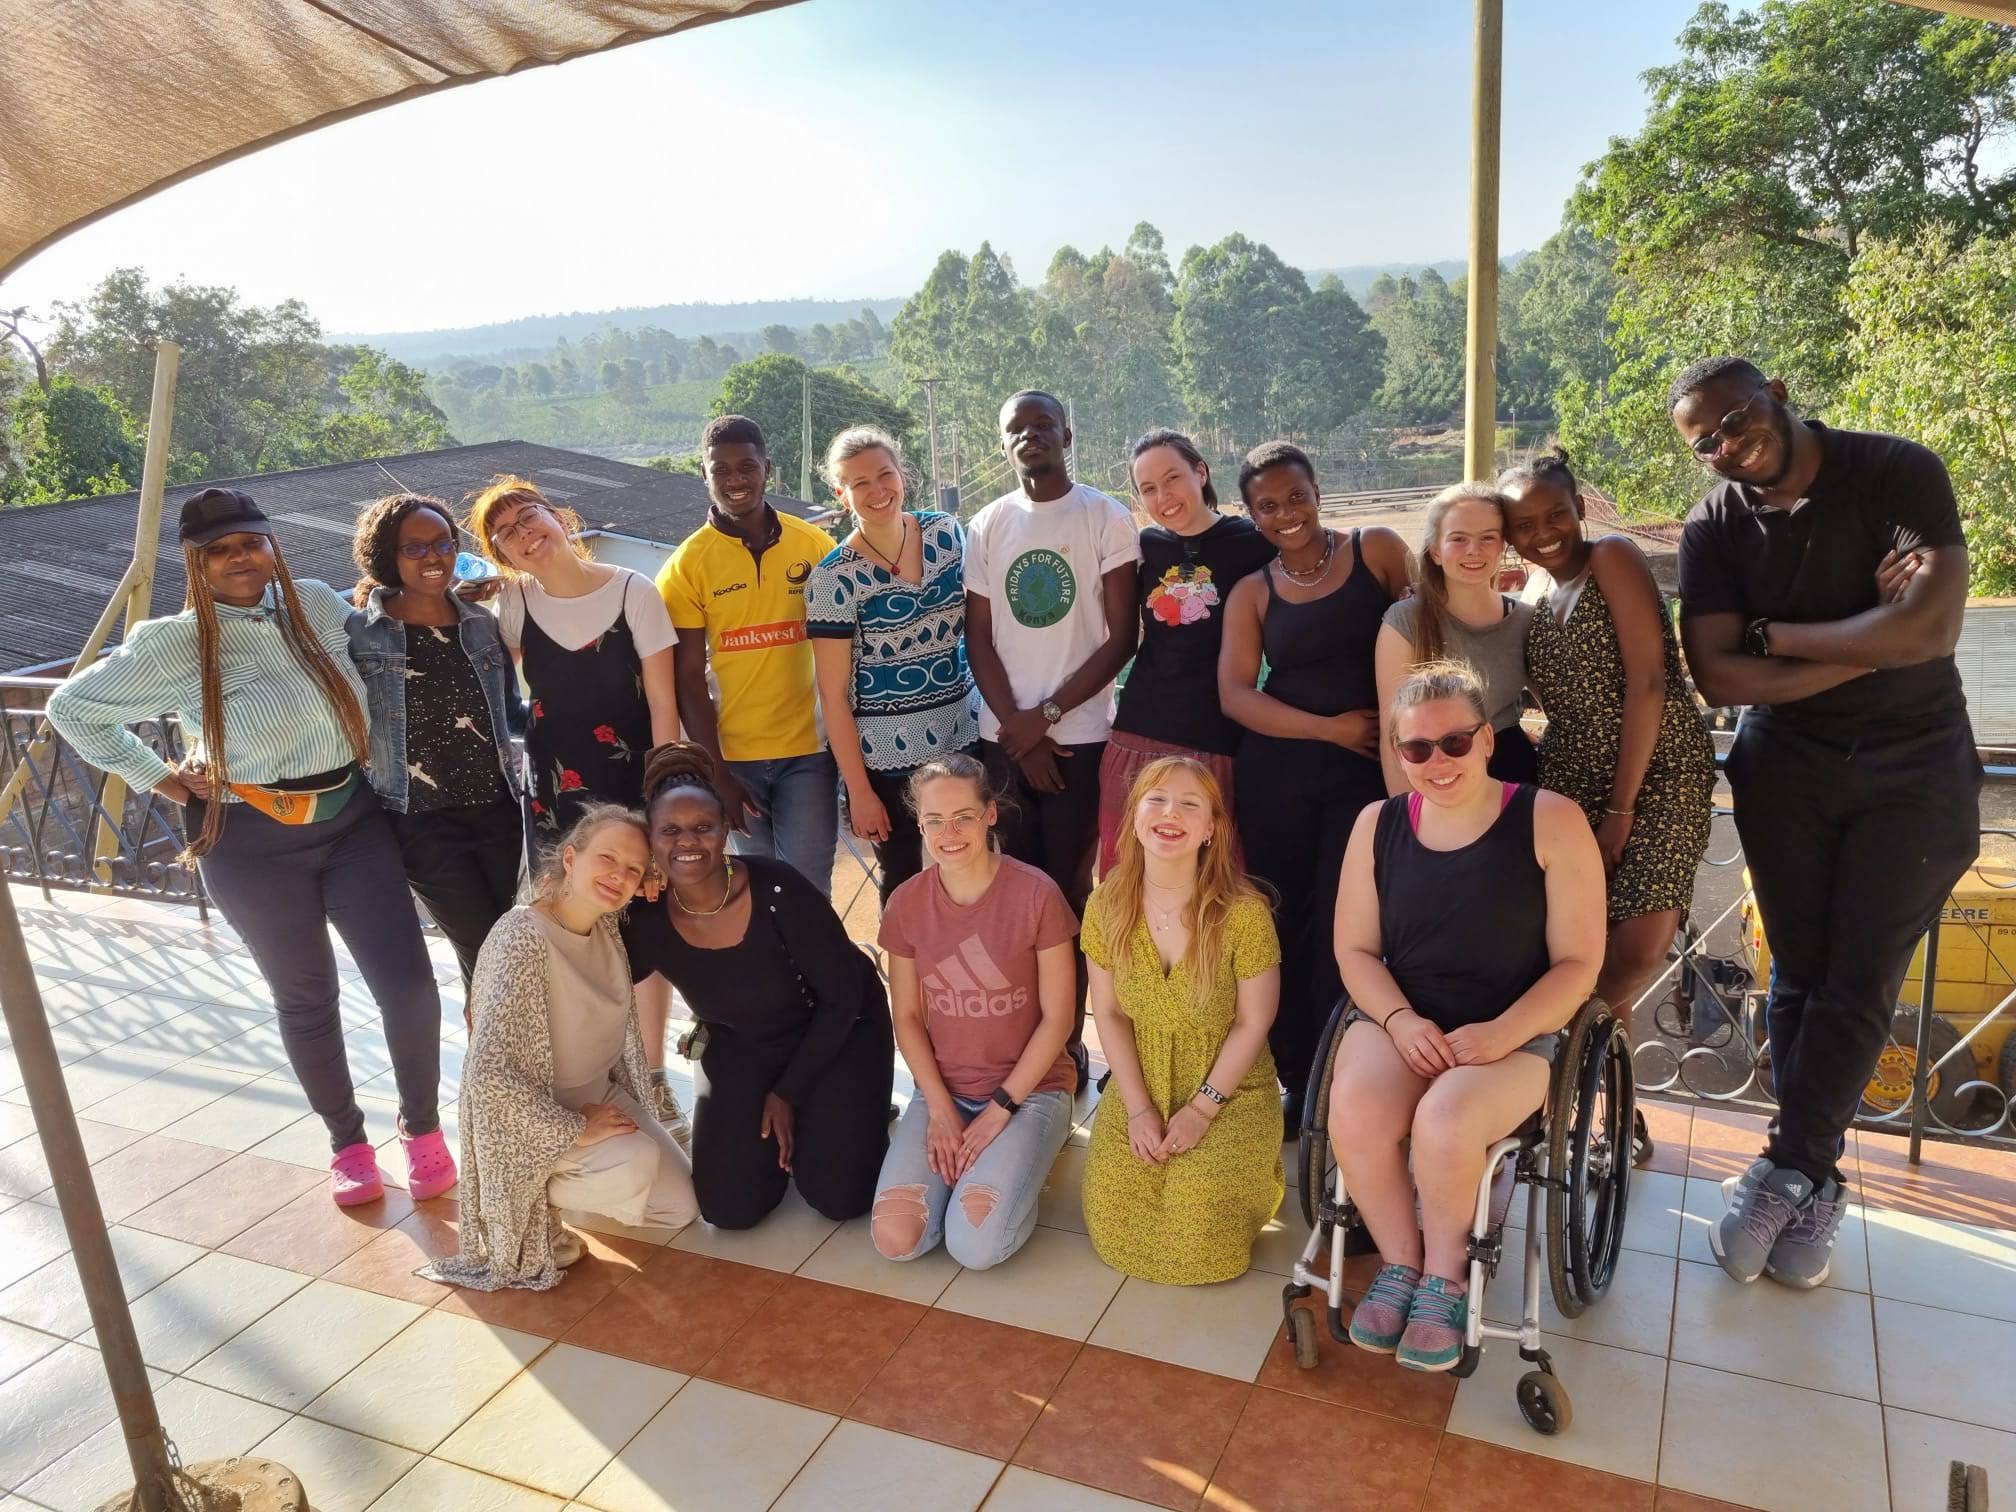 Das Bild zeigt ein Gruppenfoto der Teilnehmenden des kenianisch-deutschen Austauschsprogramms. Im Hintergrund ist Waldlandschaft zu sehen.